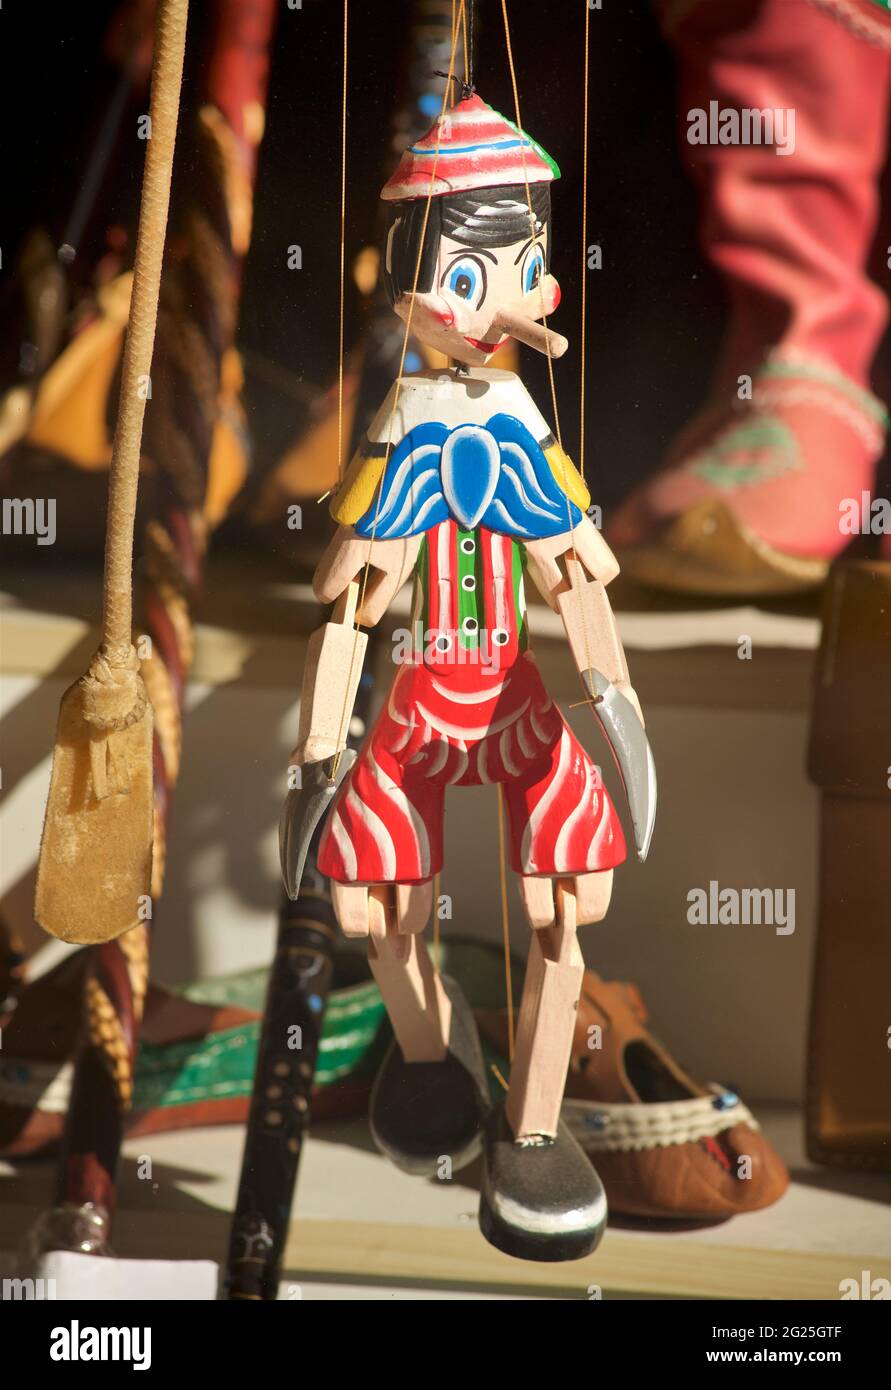 Marionnette en bois de Pinocchio exposée à la vente à Istanbul, Turquie Banque D'Images